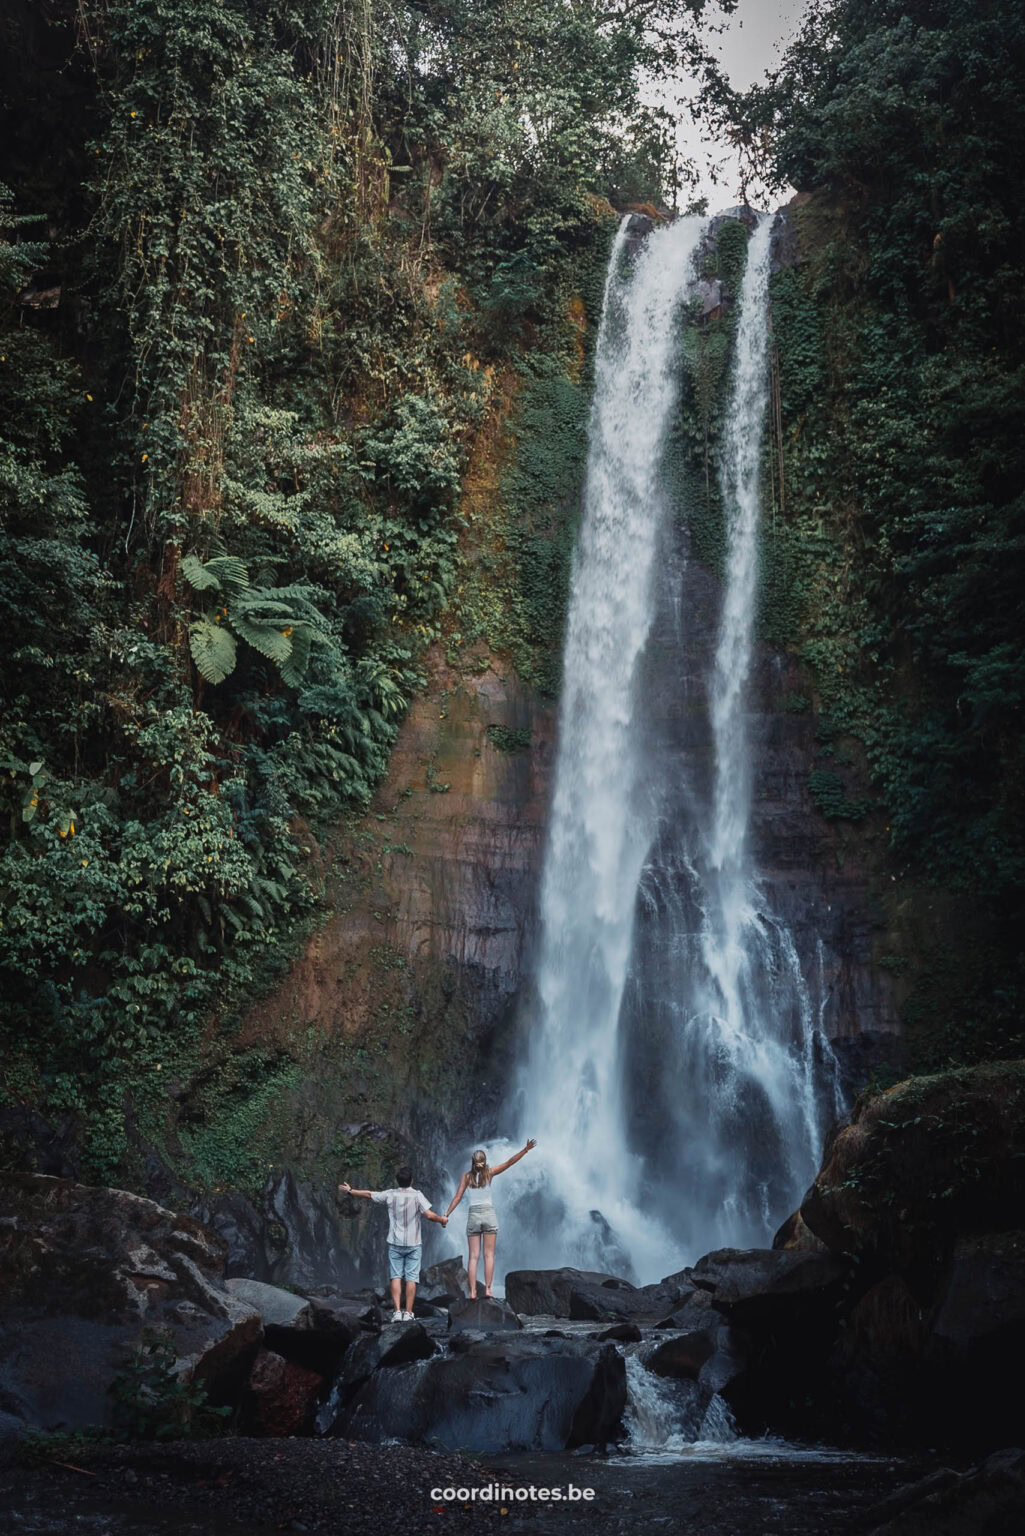 Gitgit waterfalls in Bali